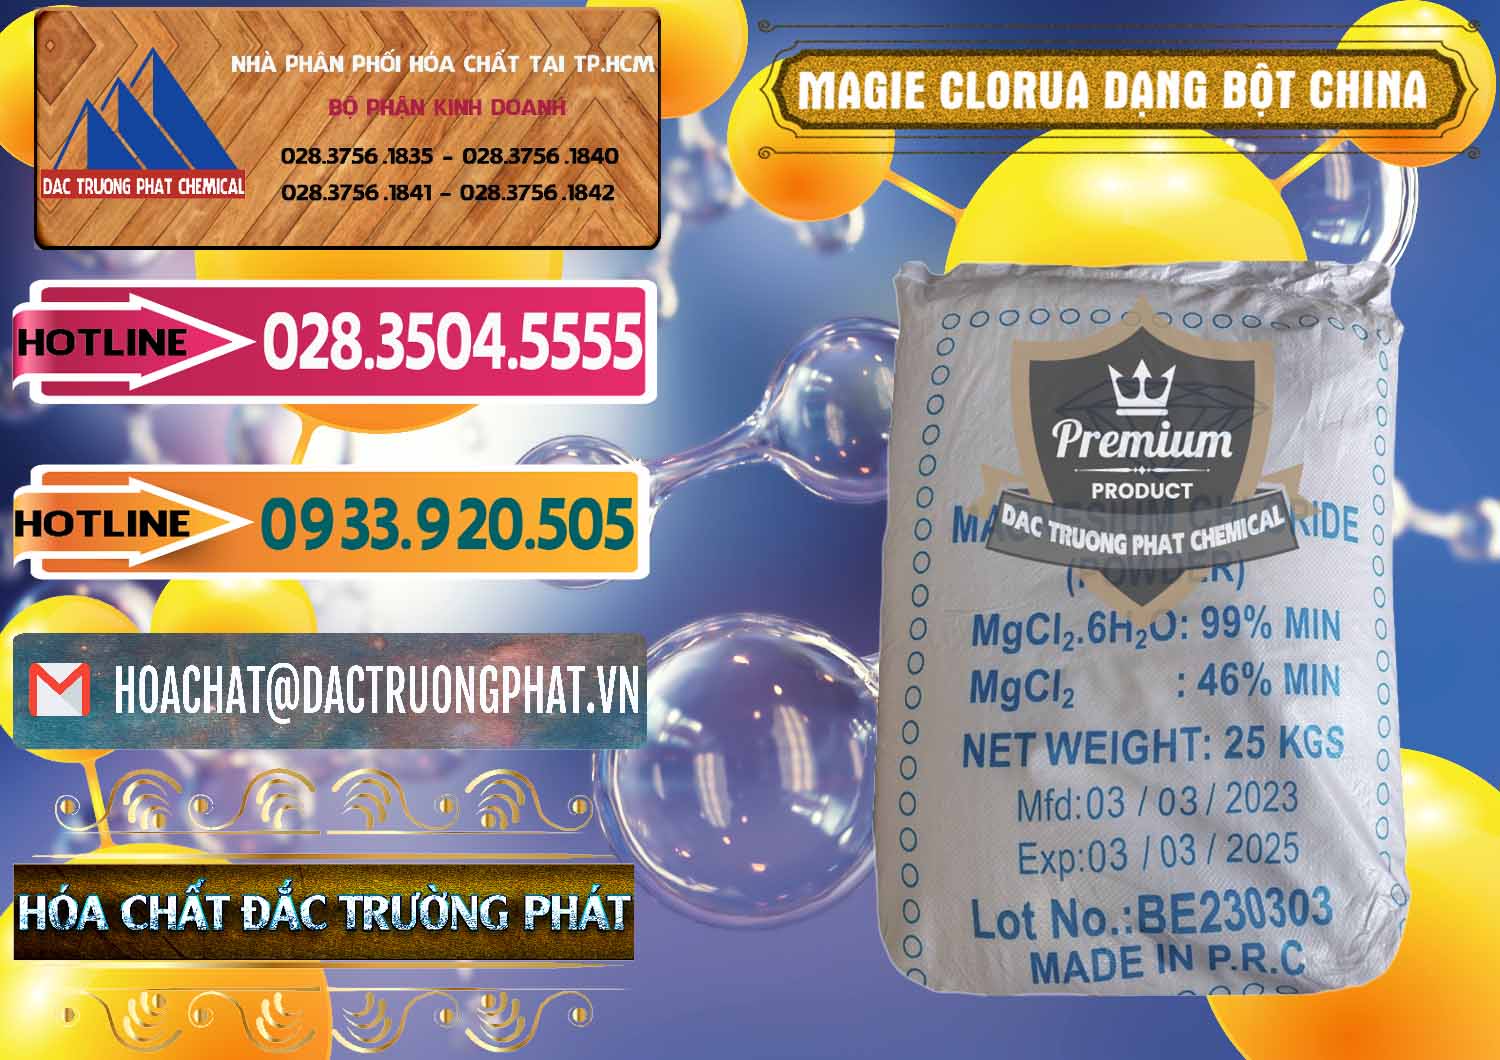 Nơi chuyên kinh doanh & bán Magie Clorua – MGCL2 96% Dạng Bột Logo Kim Cương Trung Quốc China - 0387 - Công ty chuyên cung cấp - bán hóa chất tại TP.HCM - dactruongphat.vn